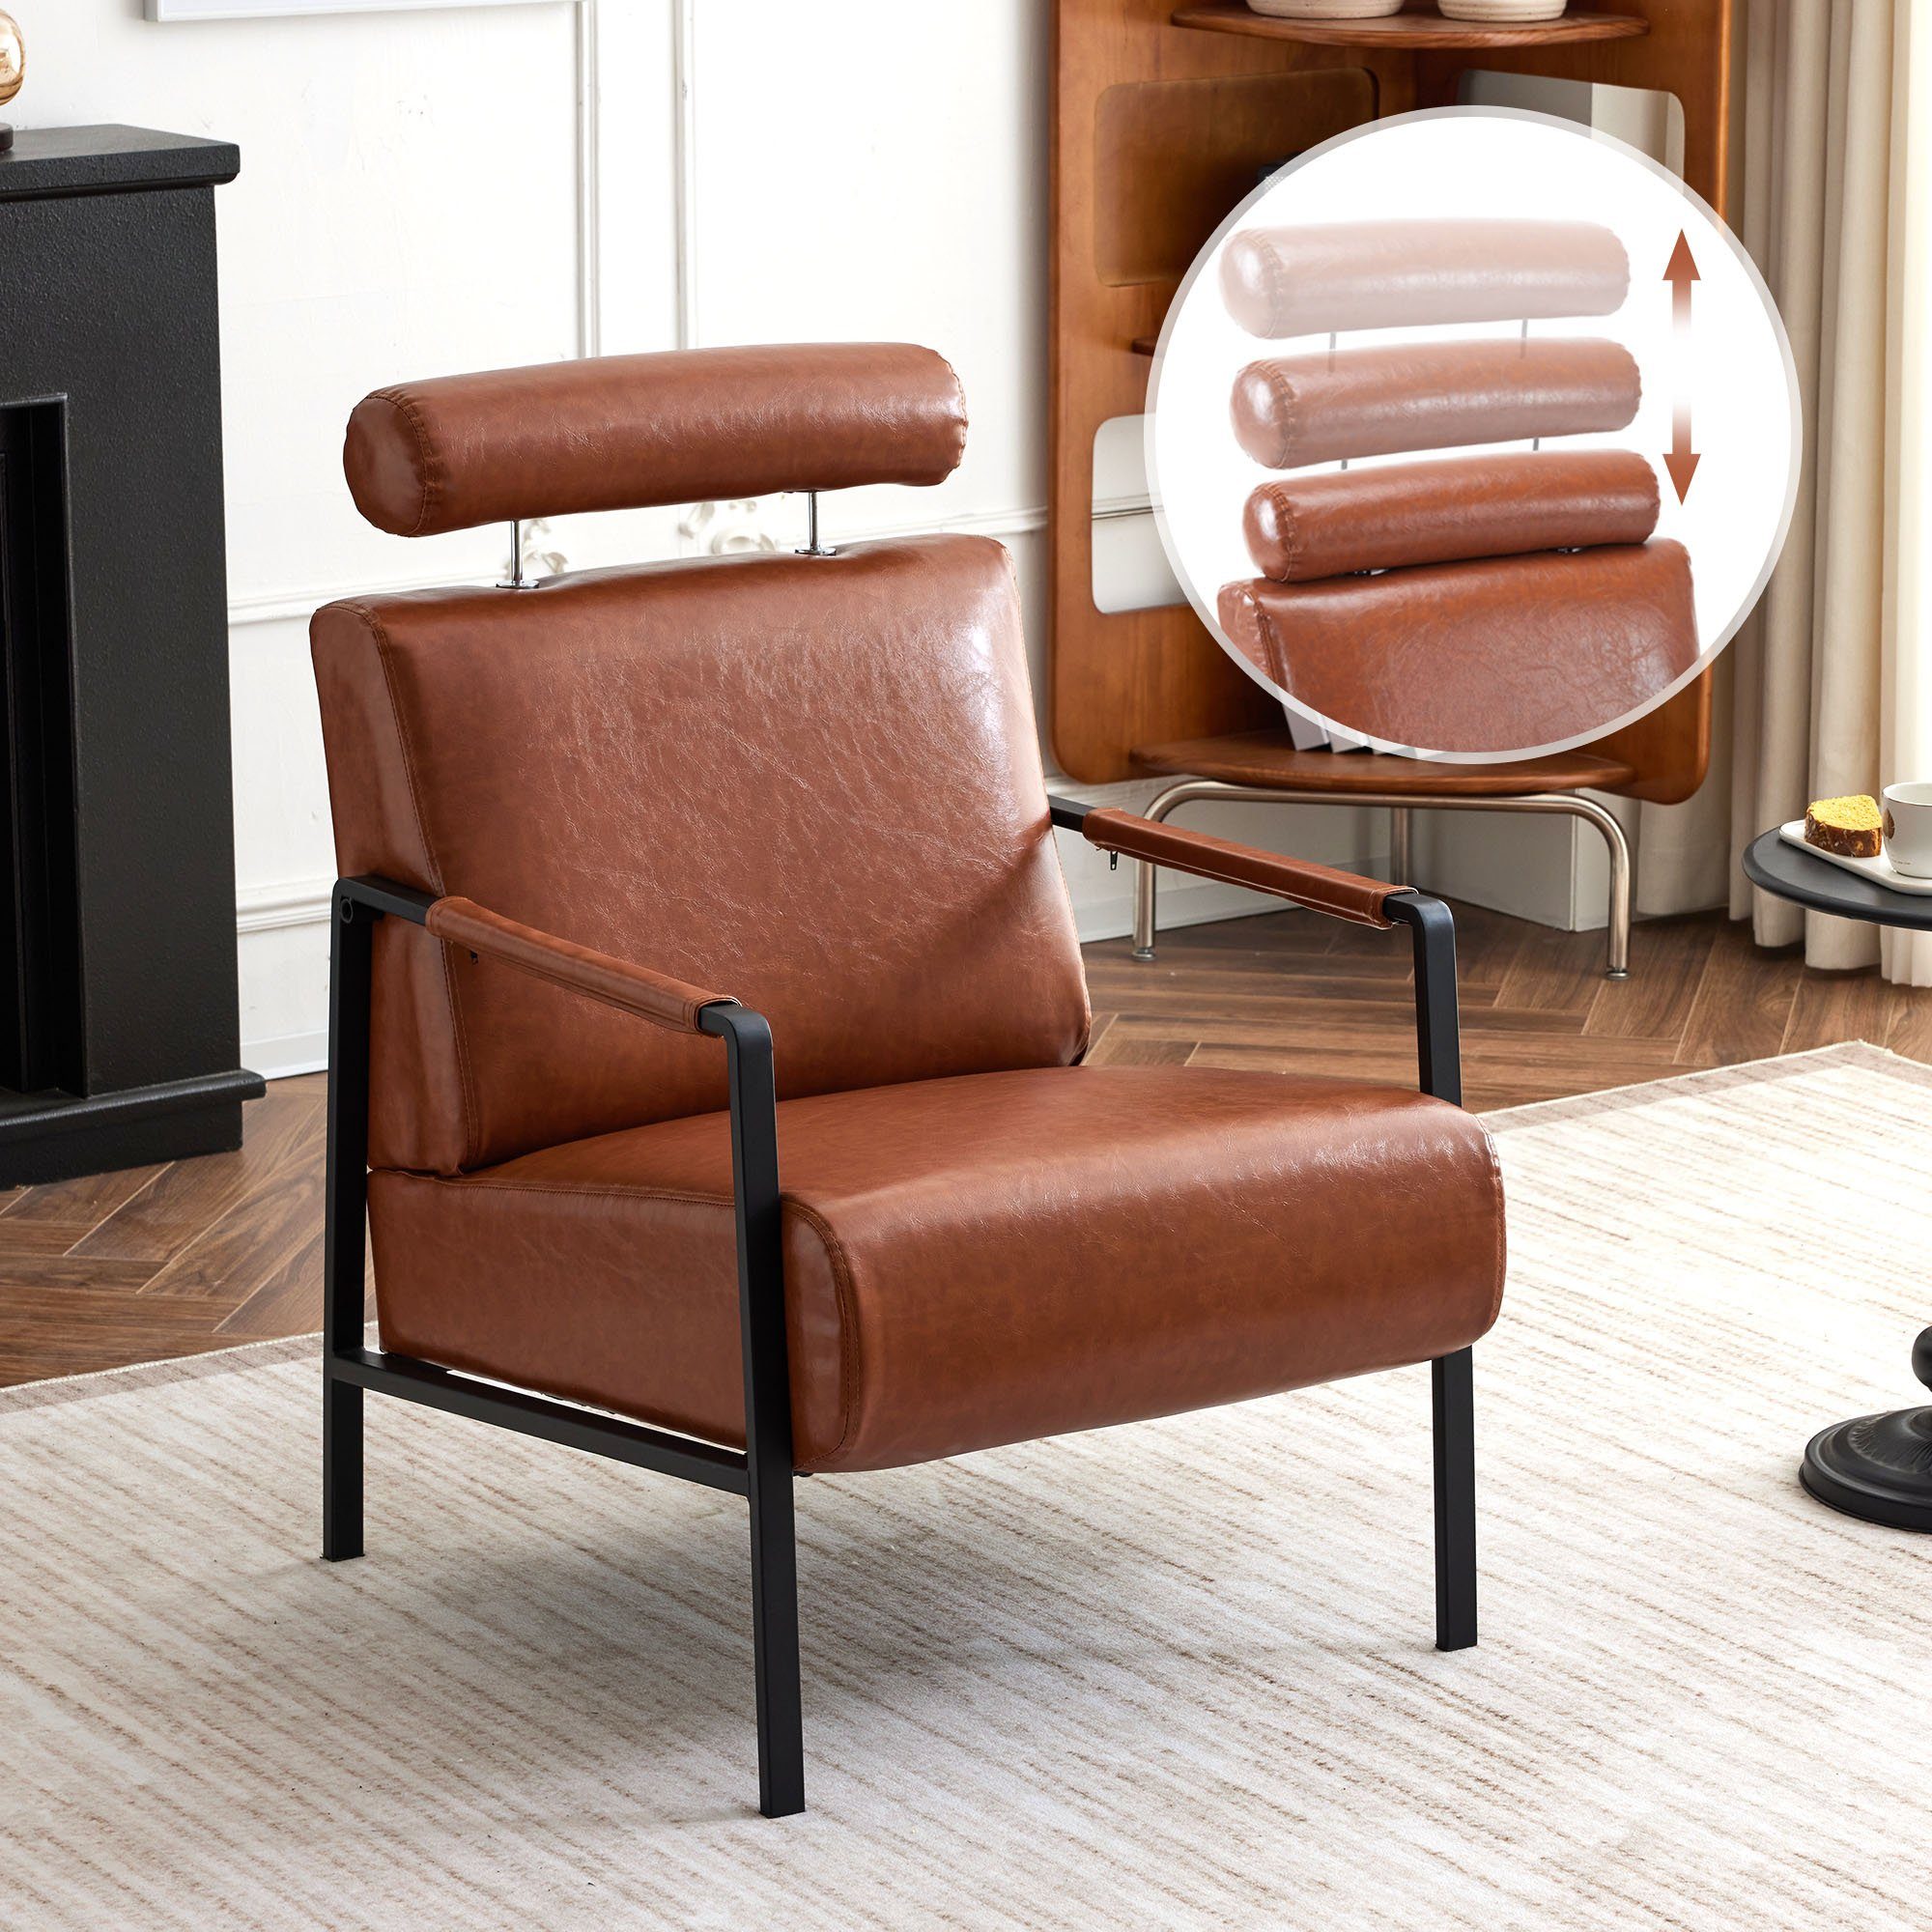 Merax Sessel aus Kunstleder, Loungesessel, Relaxsessel, mit Metallrahmen und Polsterung, verstellbarer Kopfstütze